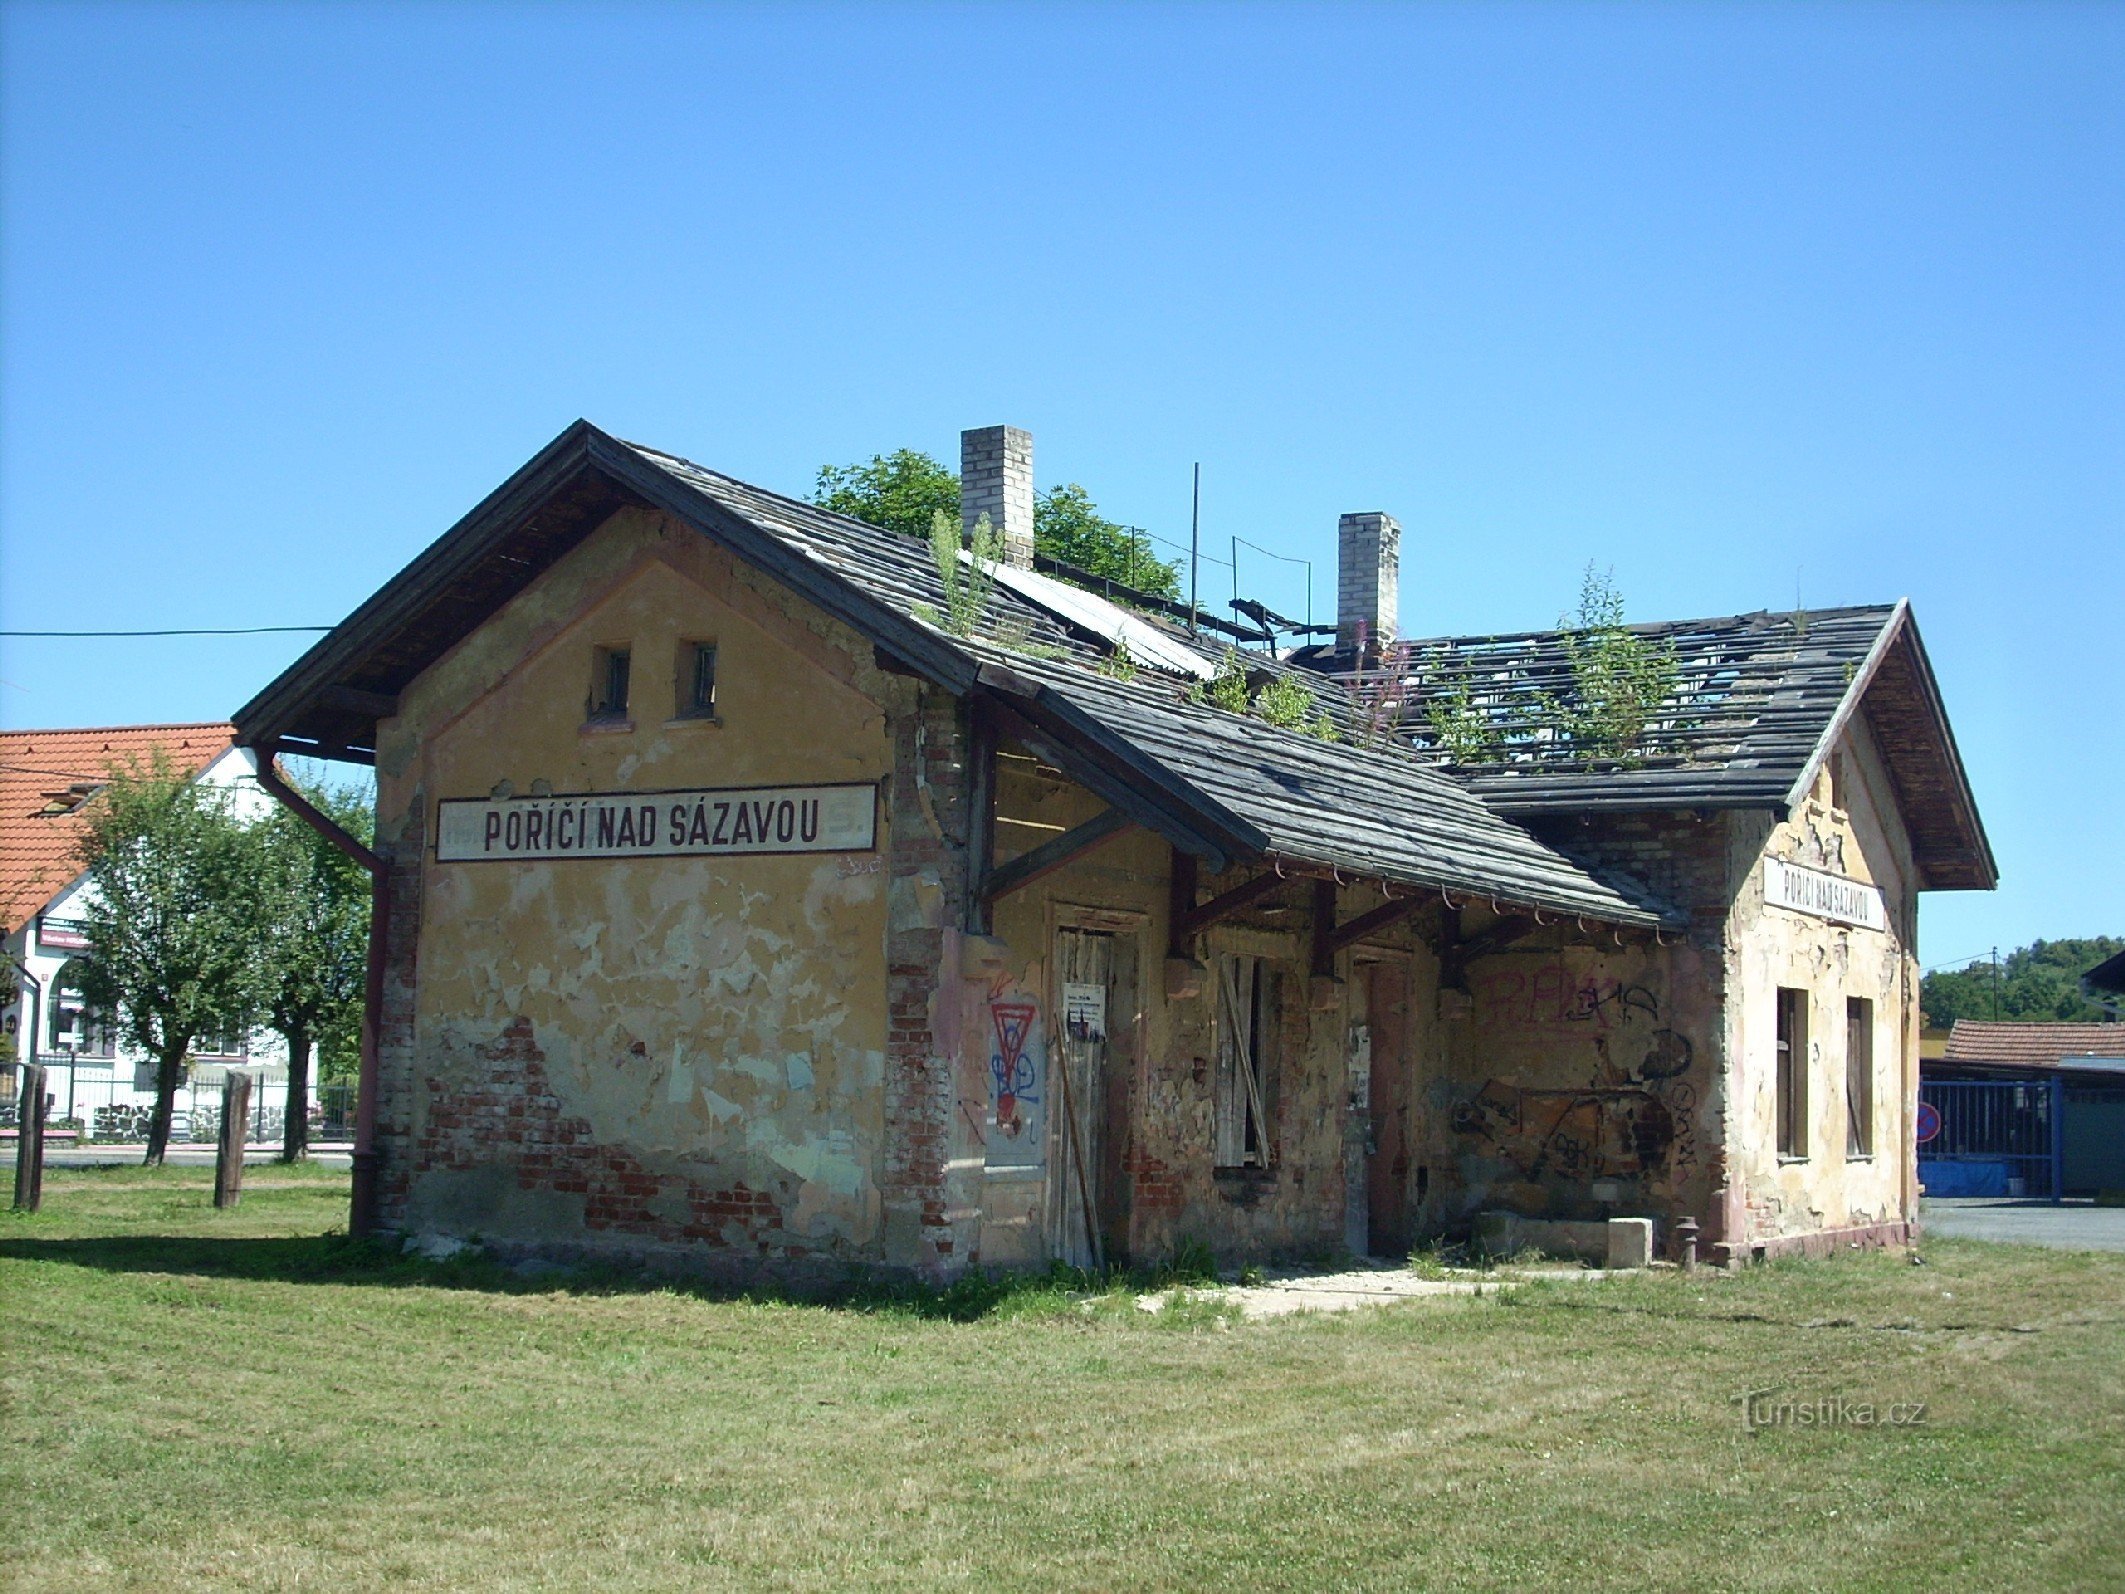 2. Poříčí nad Sázavou pályaudvara - a képen látható, hogyan tűnik el fokozatosan a kis vasútállomás